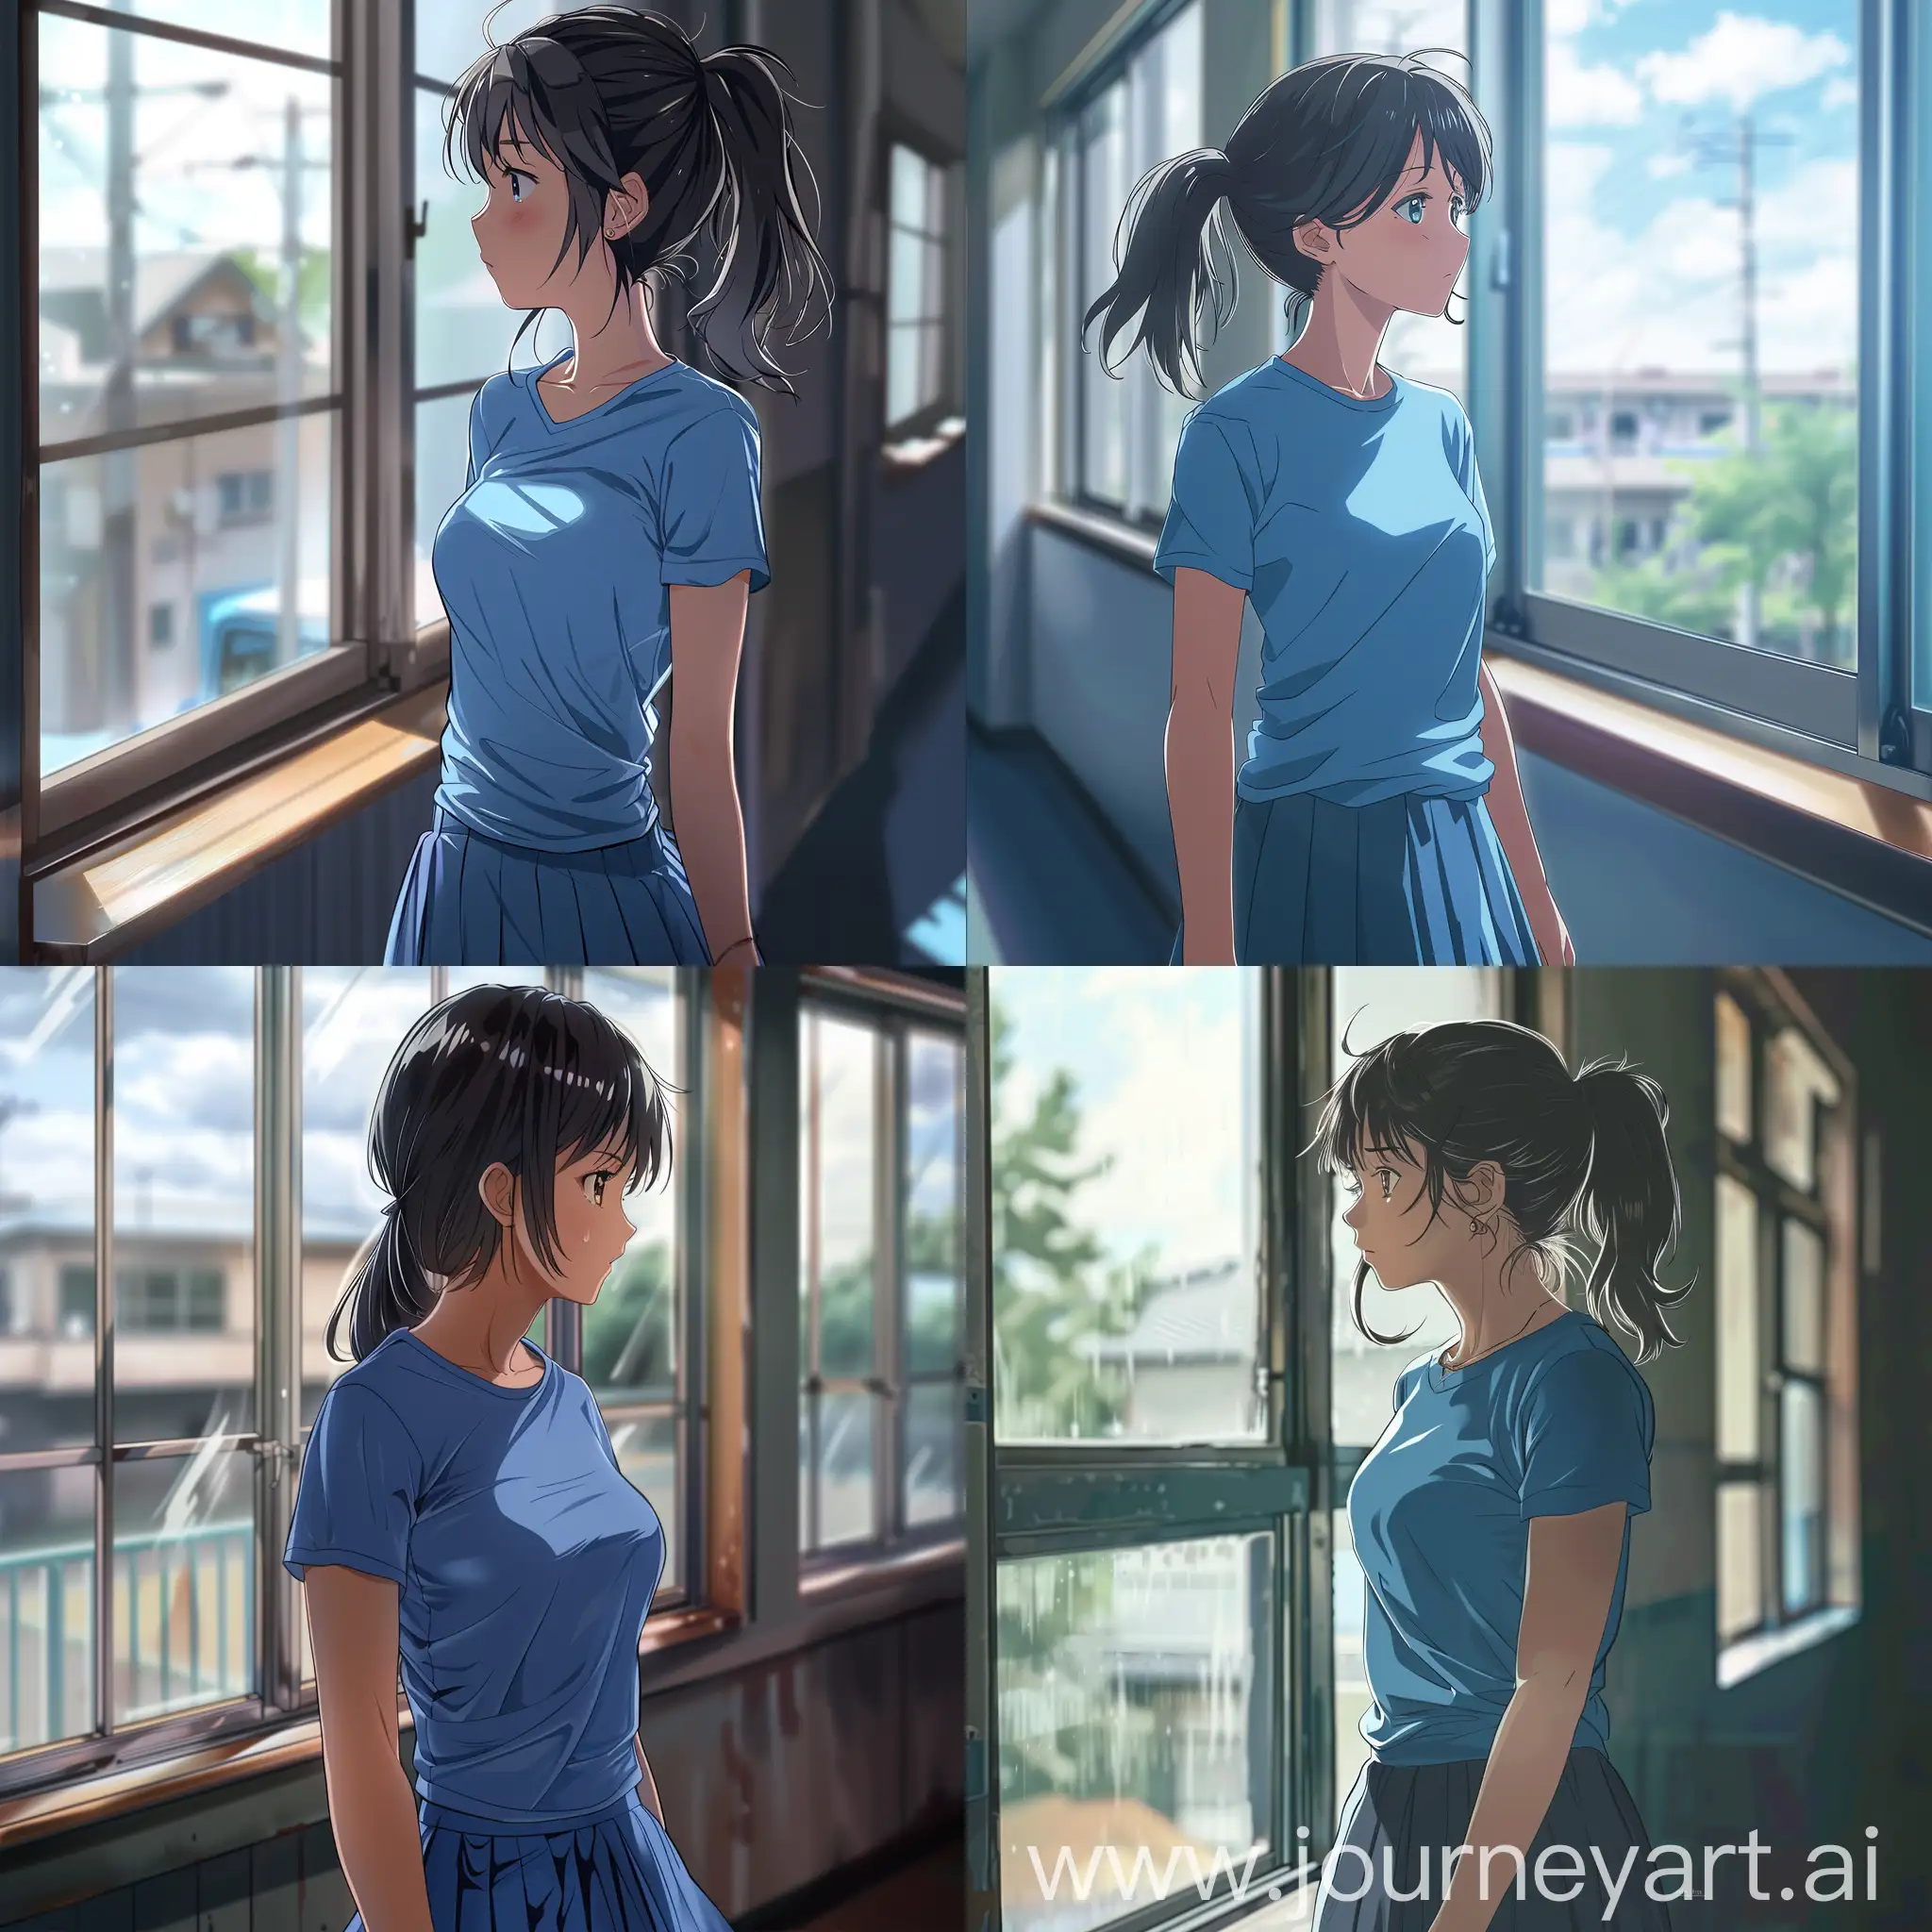 аниме девушка в синей майке и юбке смотрит в окно в учебном заведении.